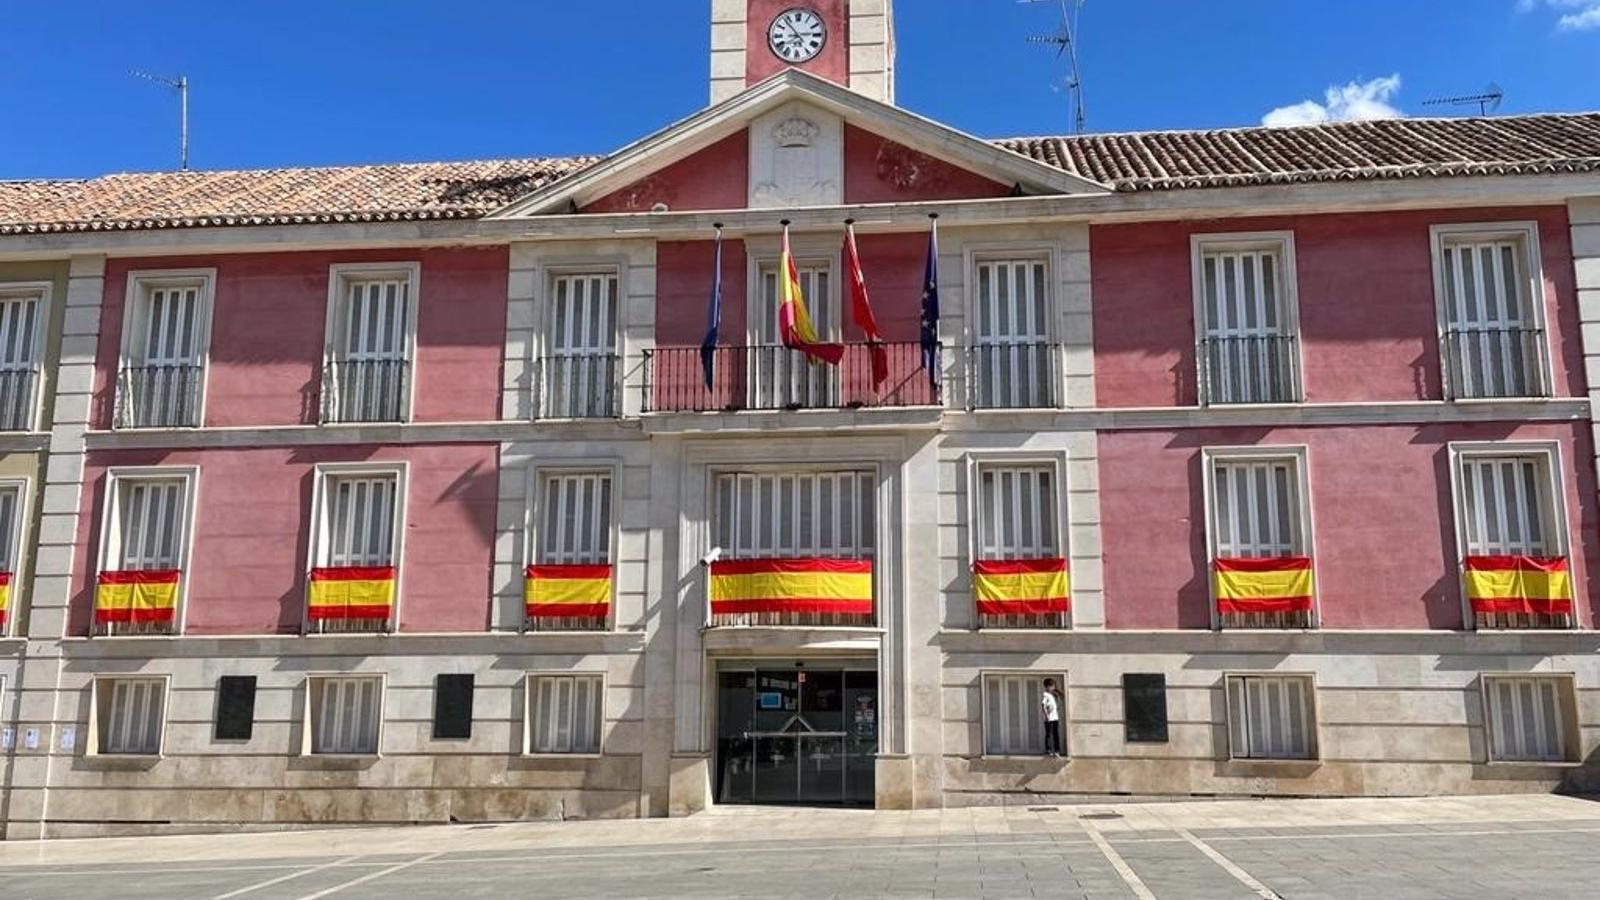 El casco histórico de Aranjuez recupera la señalización del siglo XVIII de las calles